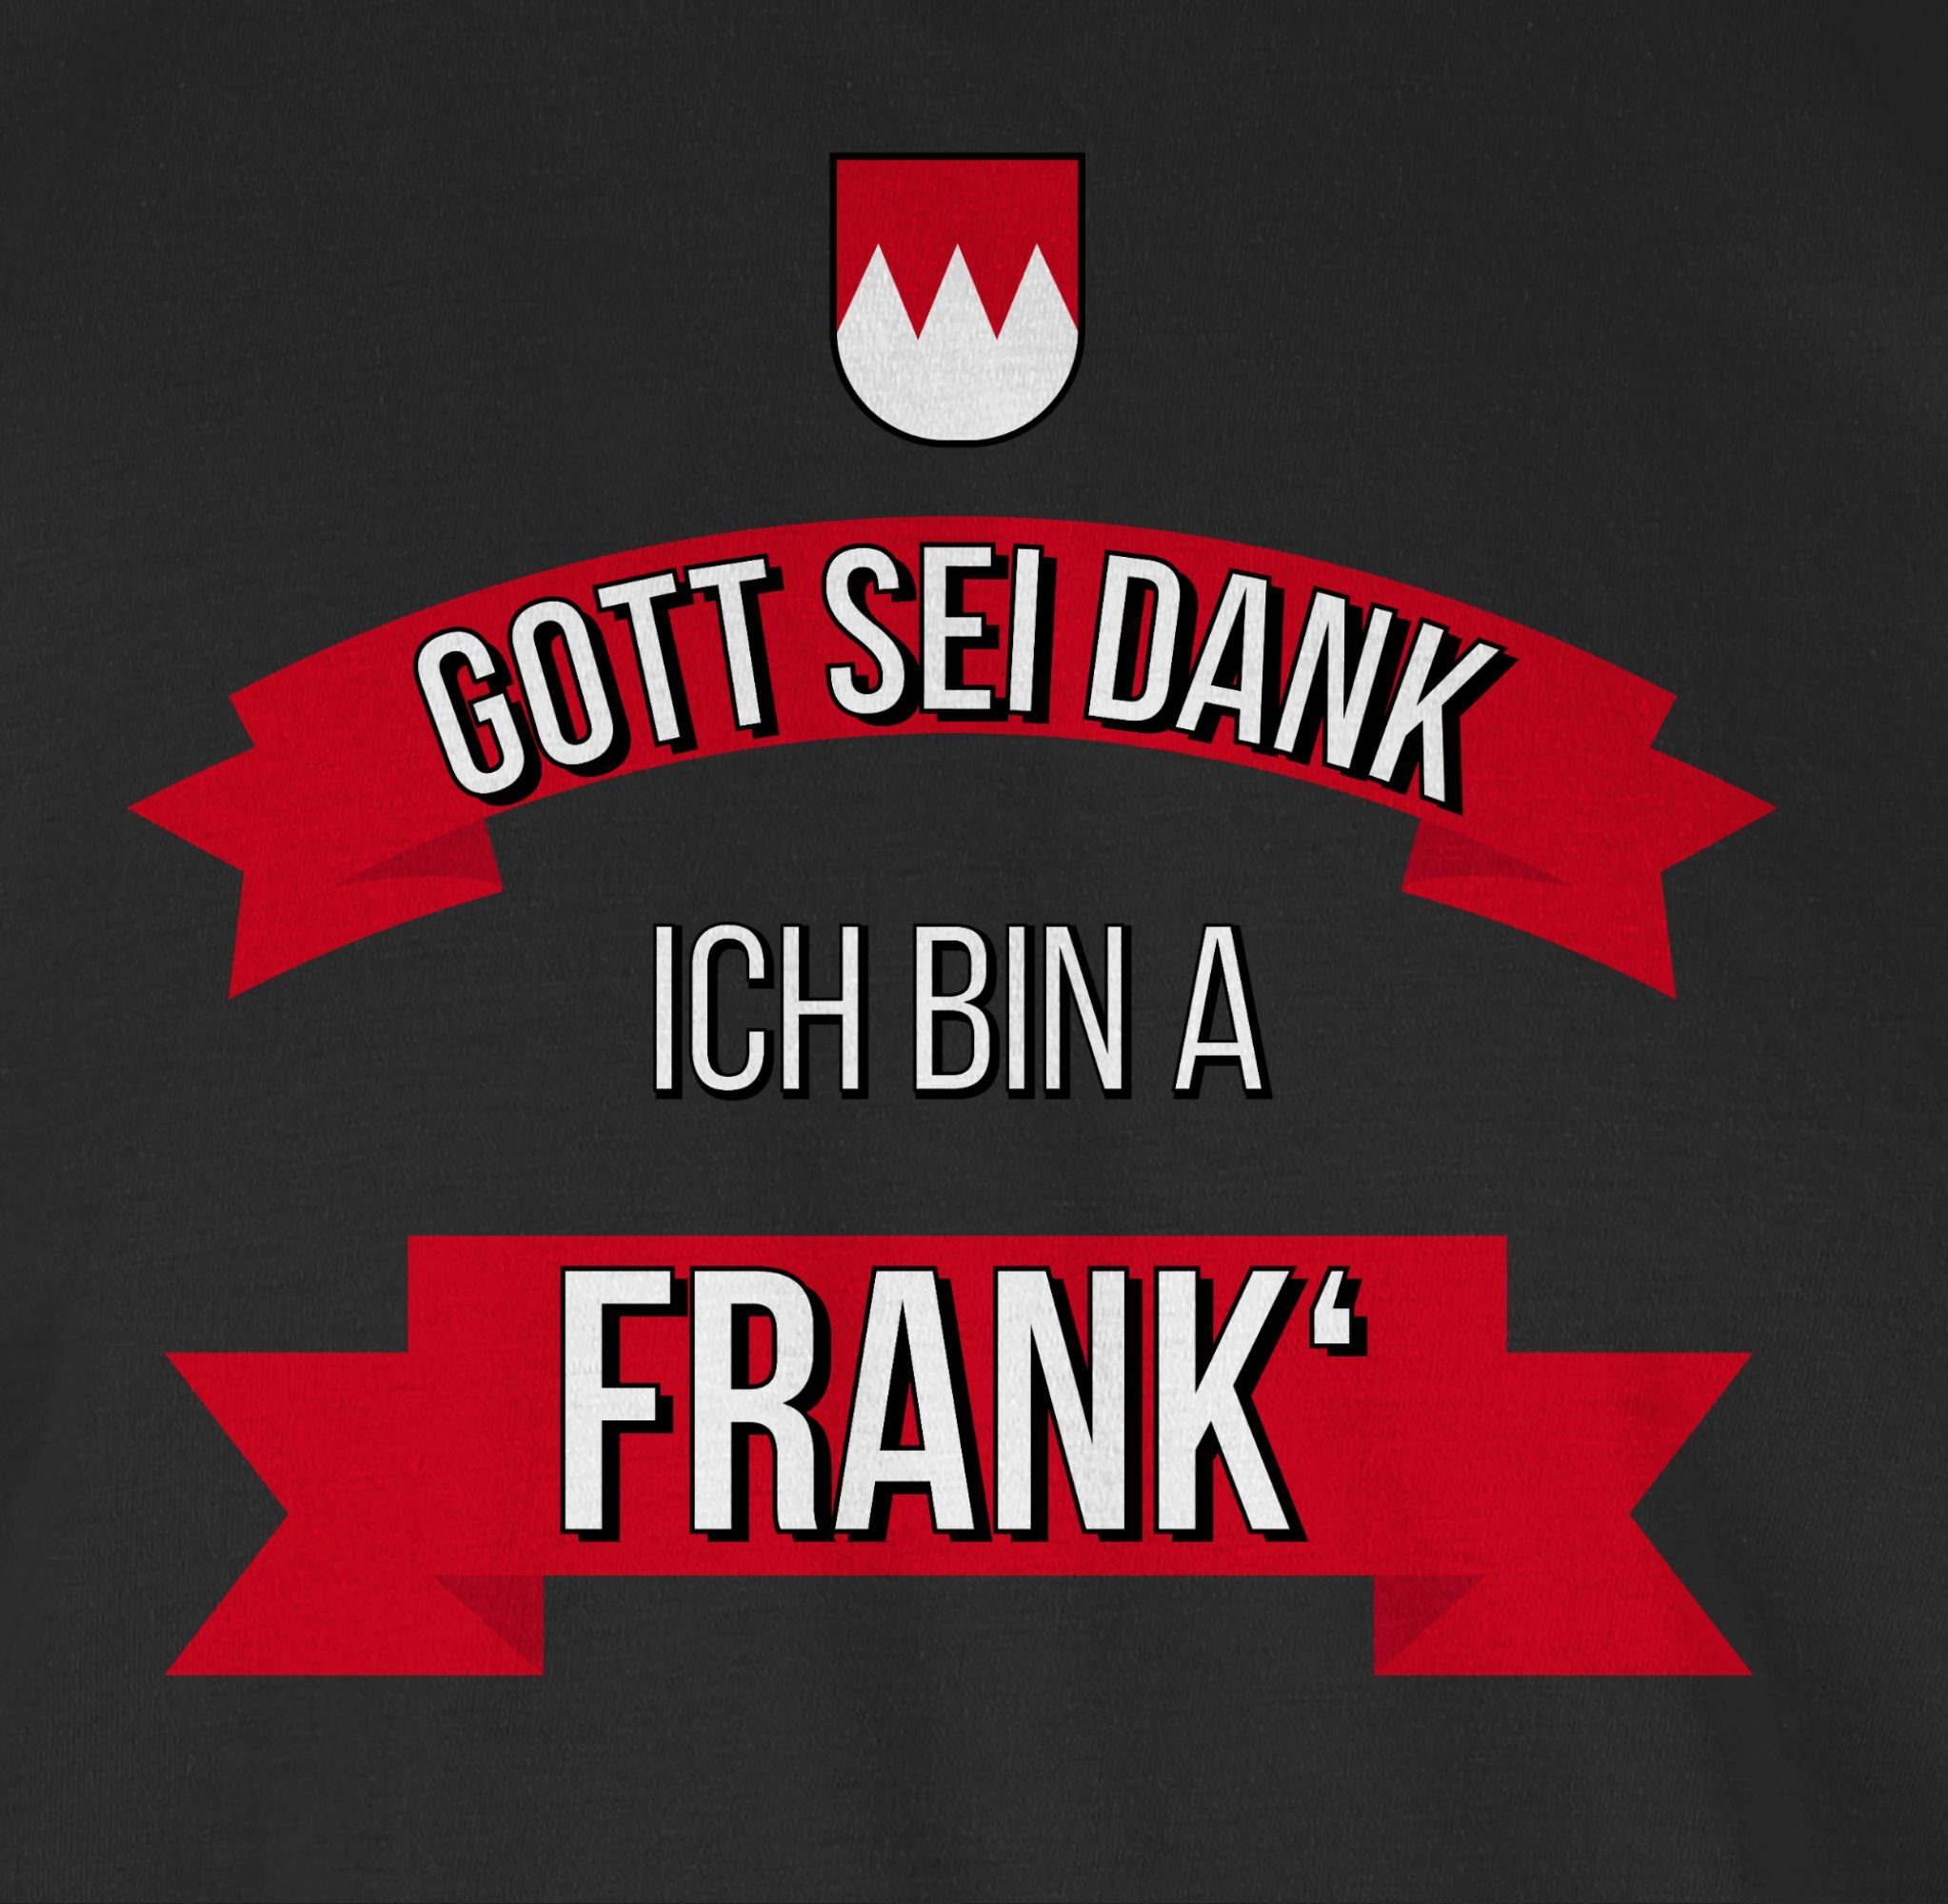 Shirtracer T-Shirt ich sei Gott Schwarz 1 Franken a bin Frank Dank Kinder